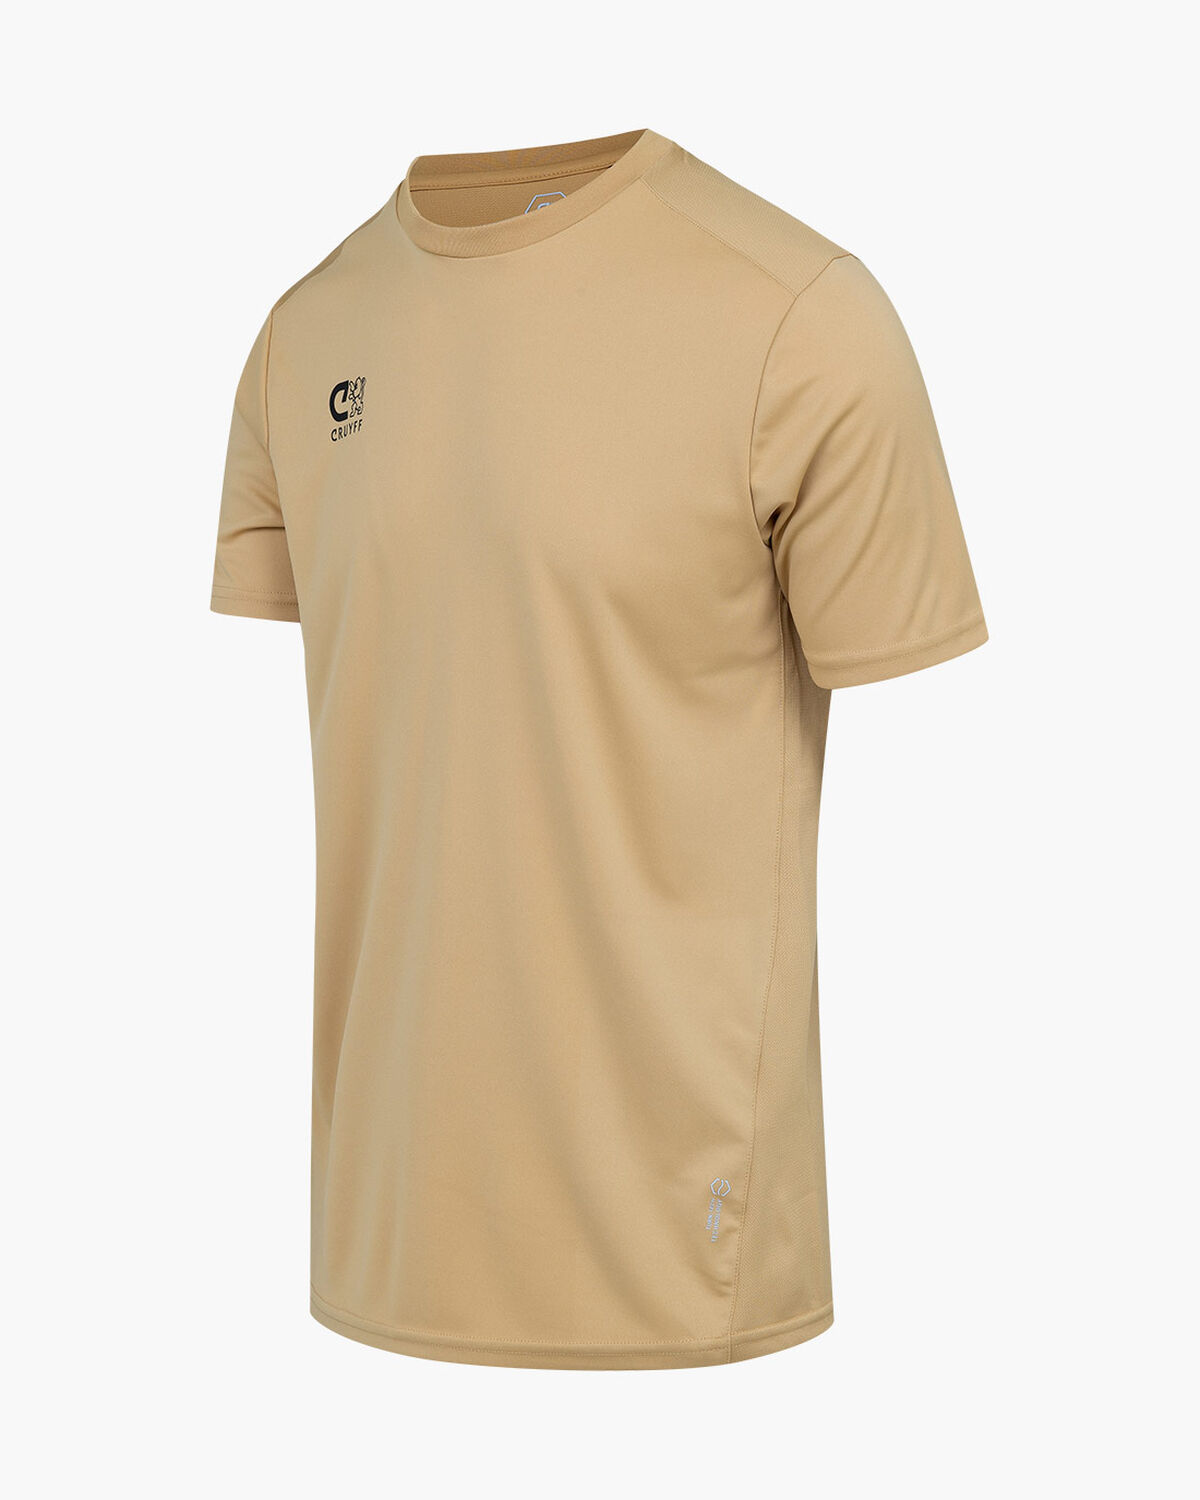 Cruyff Training Shirt Junior, Gold, hi-res